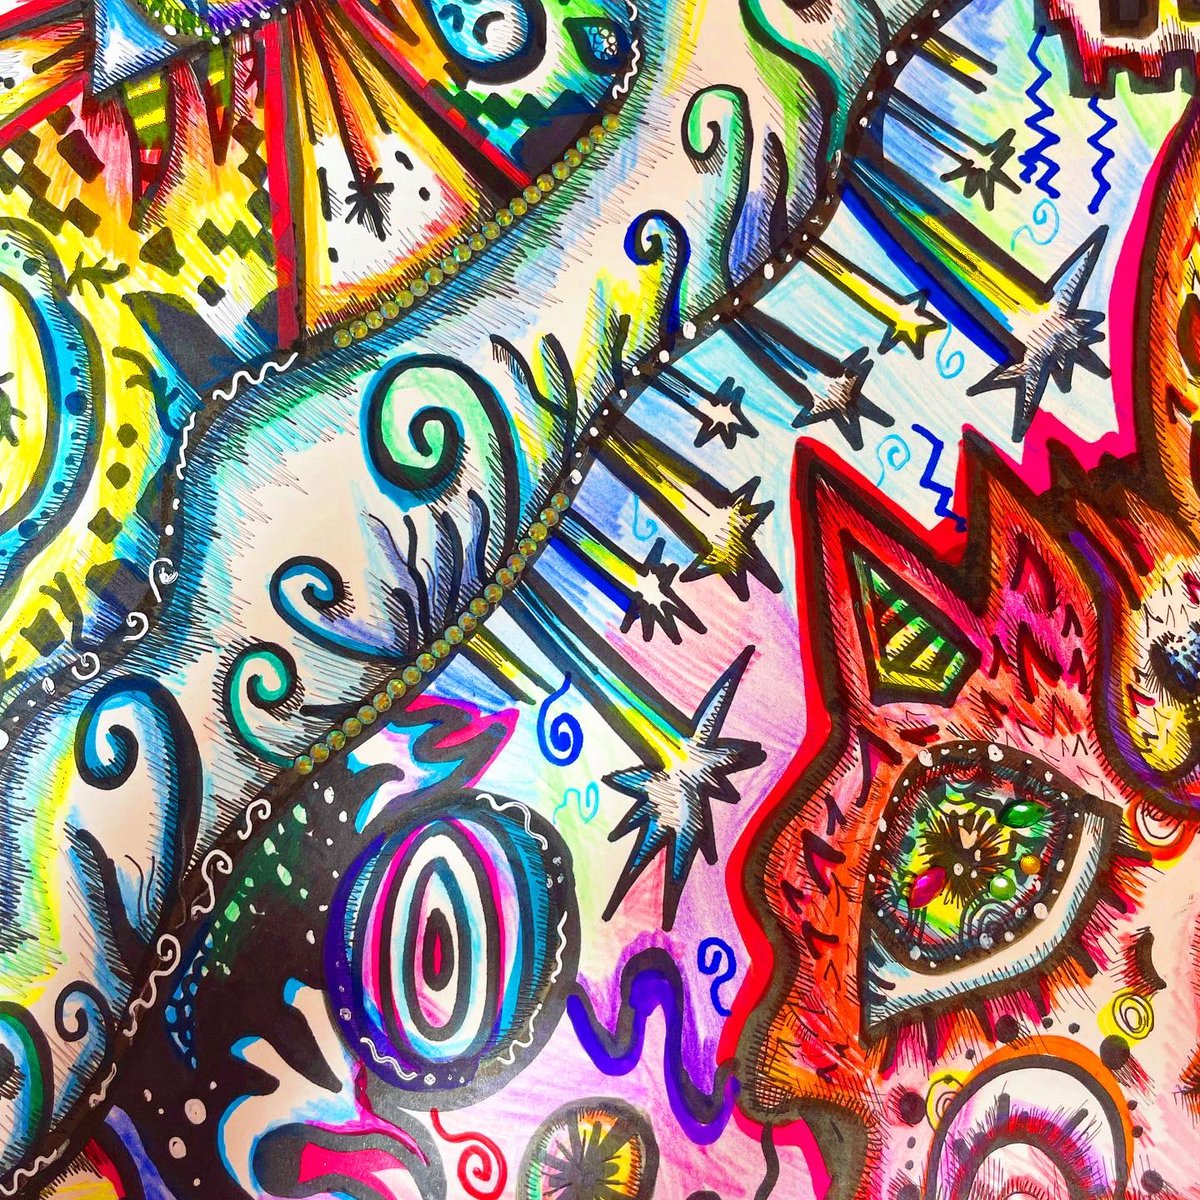 起死回生

#penart #art #ART2023 #drawingart #colorful #psychedelic #colorpencile #cat #artwork #pop #ペン画 #絵　
#美術 #作品 #カラフル #サイケデリック #アート #細密画 #色鉛筆画 #ペンイラスト